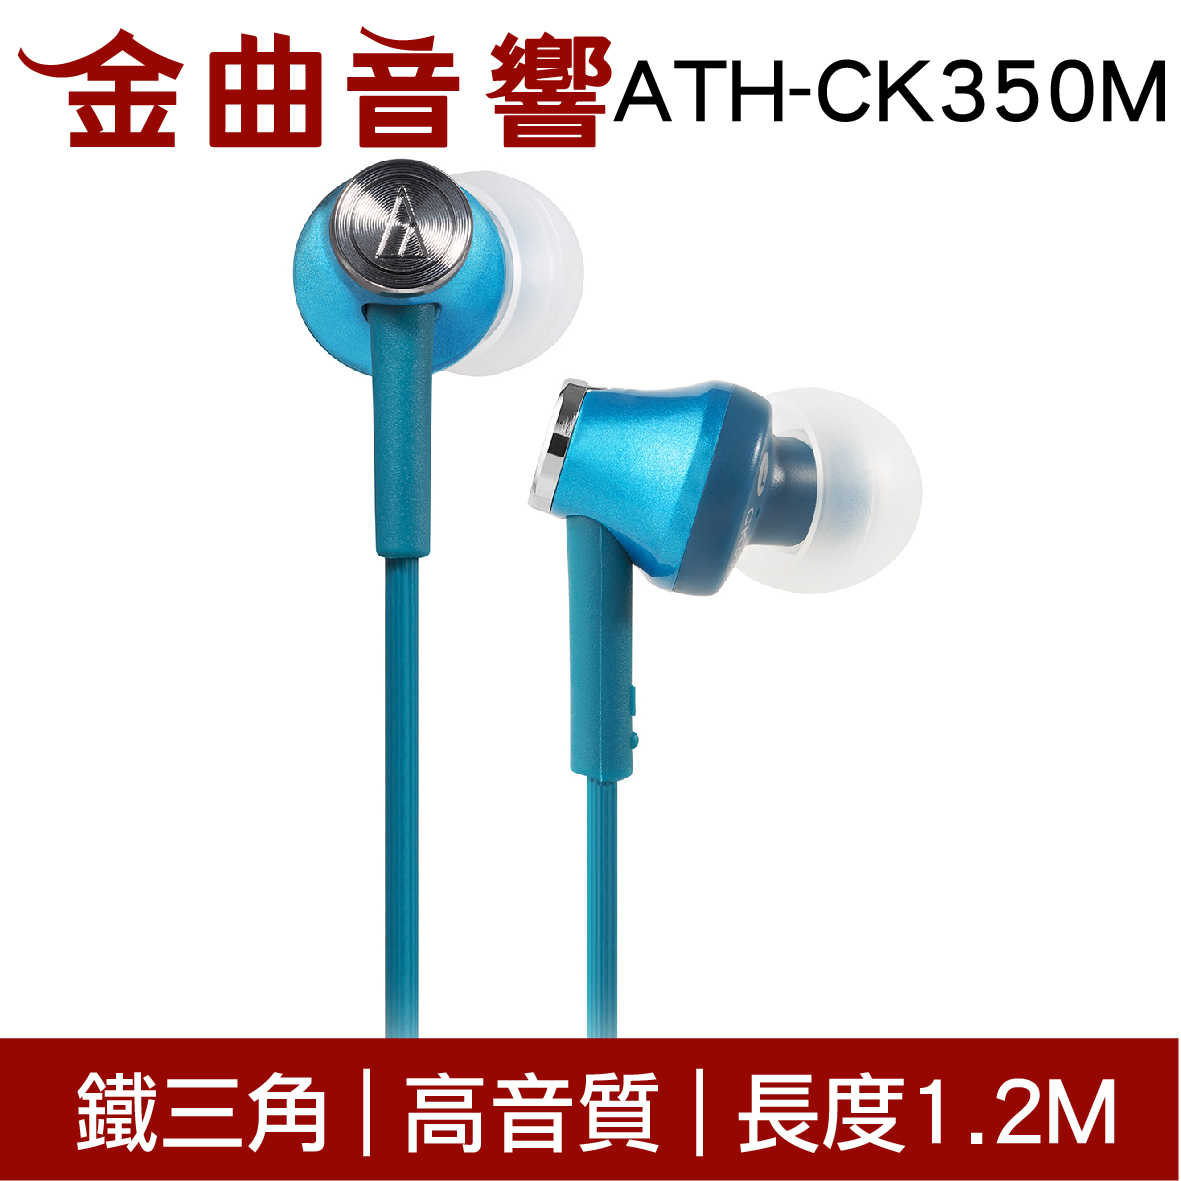 鐵三角 ATH-CK350M 灰色 高音質耳道式耳機 | 金曲音響